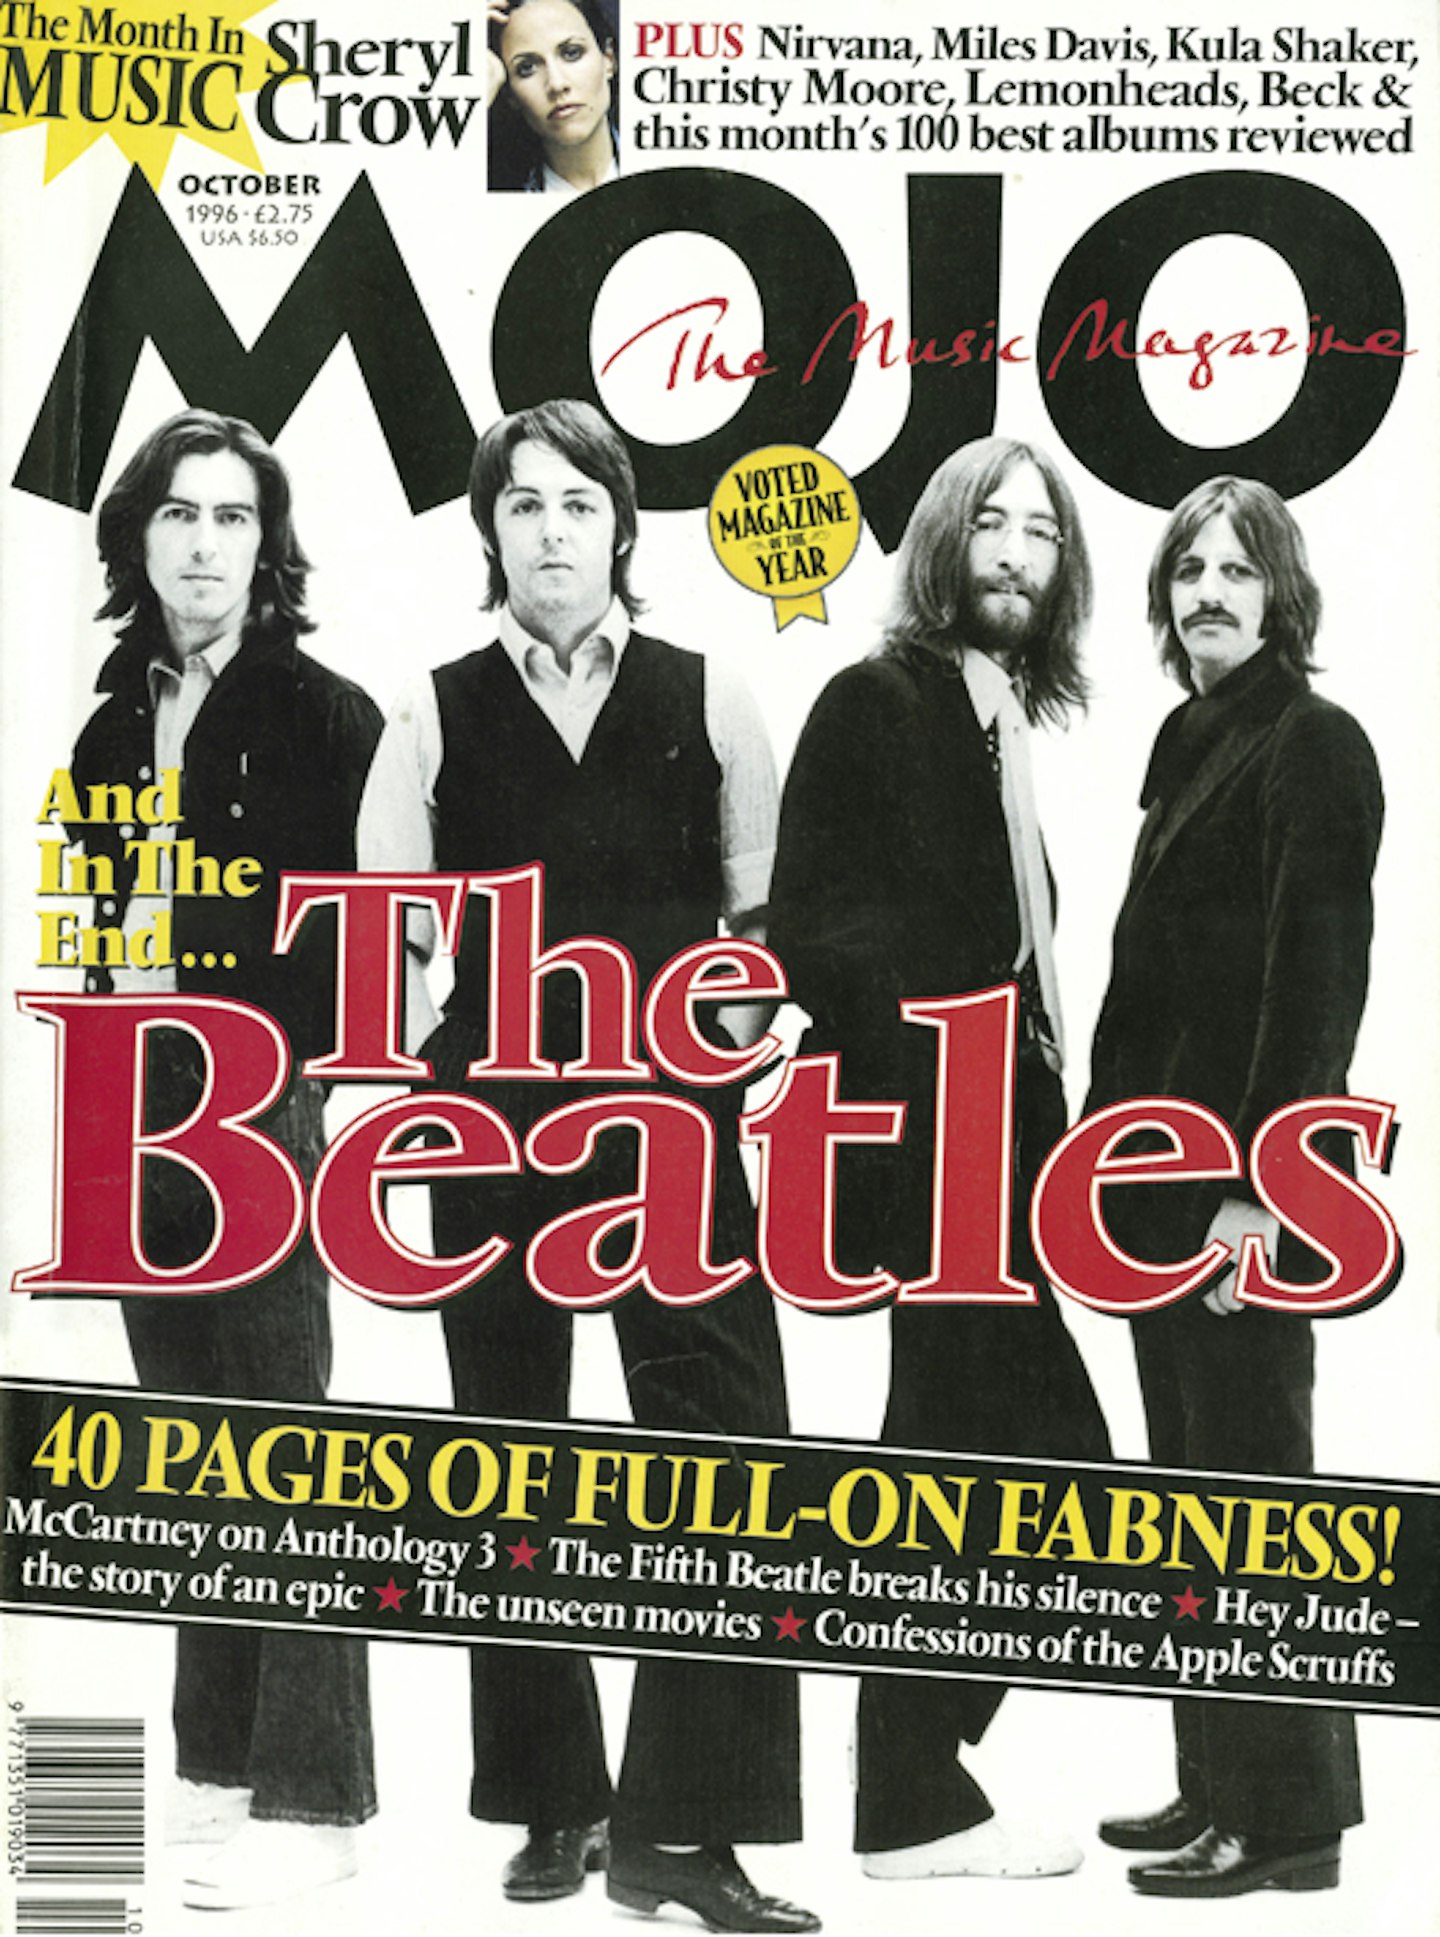 MOJO Issue 35 / October 1996